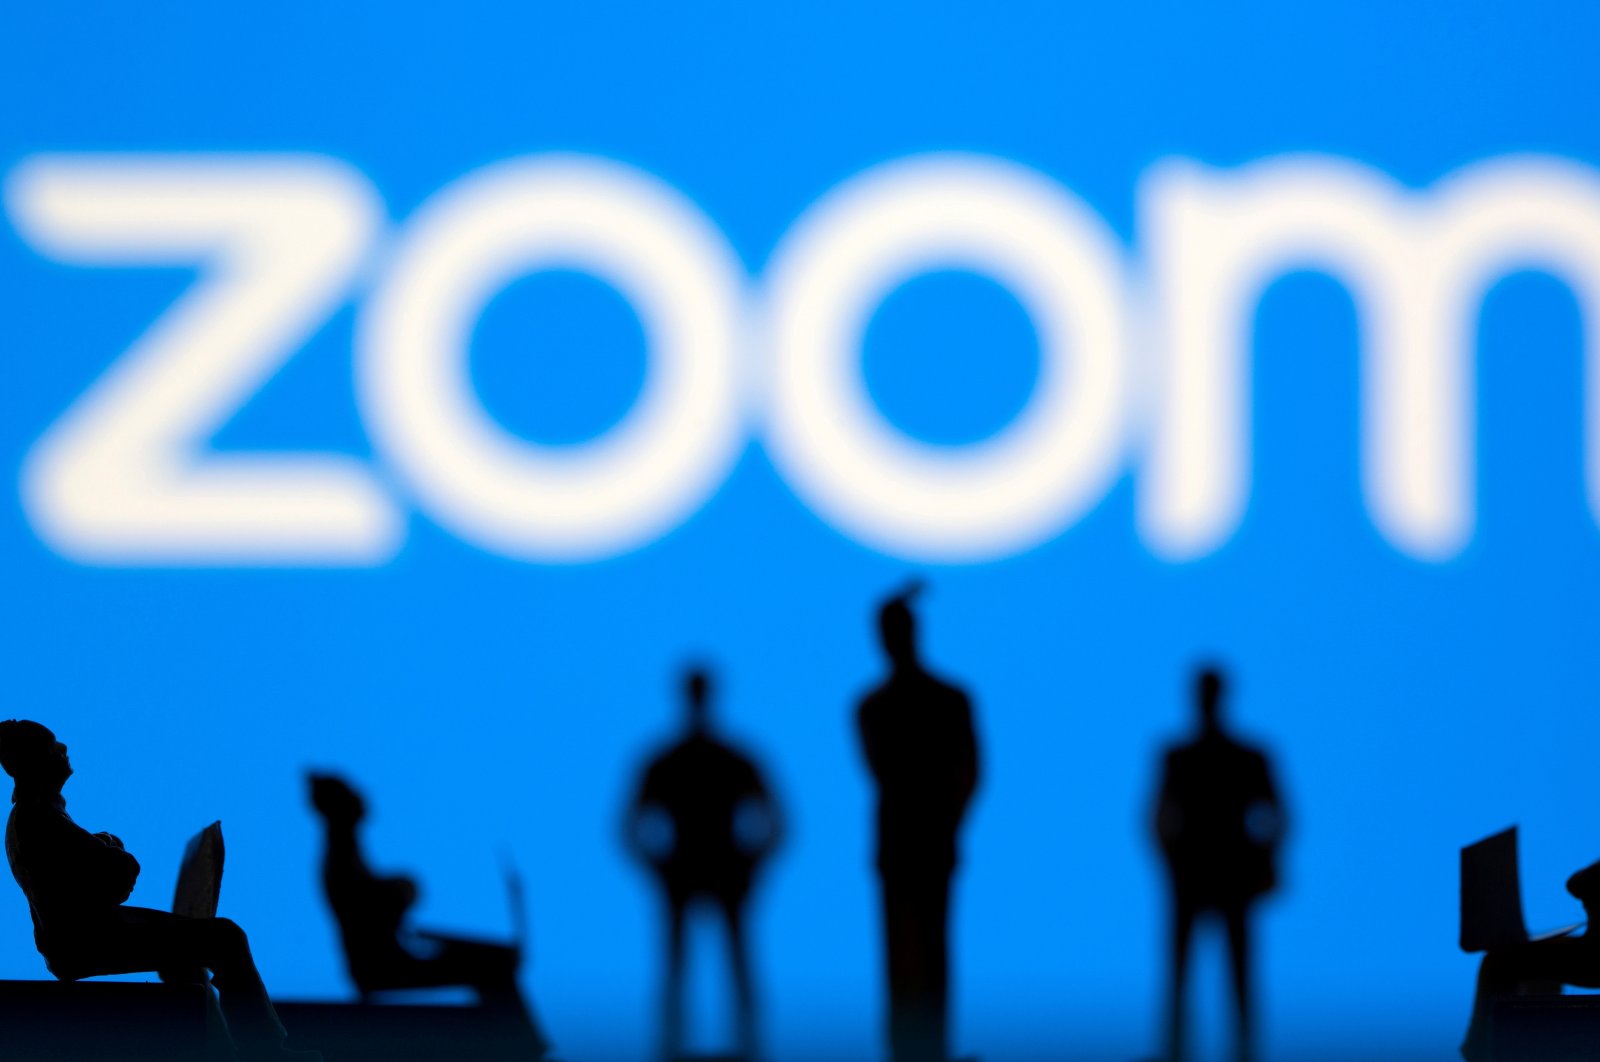 Dikritik: CEO AS meminta maaf setelah memecat 900 karyawan karena Zoom